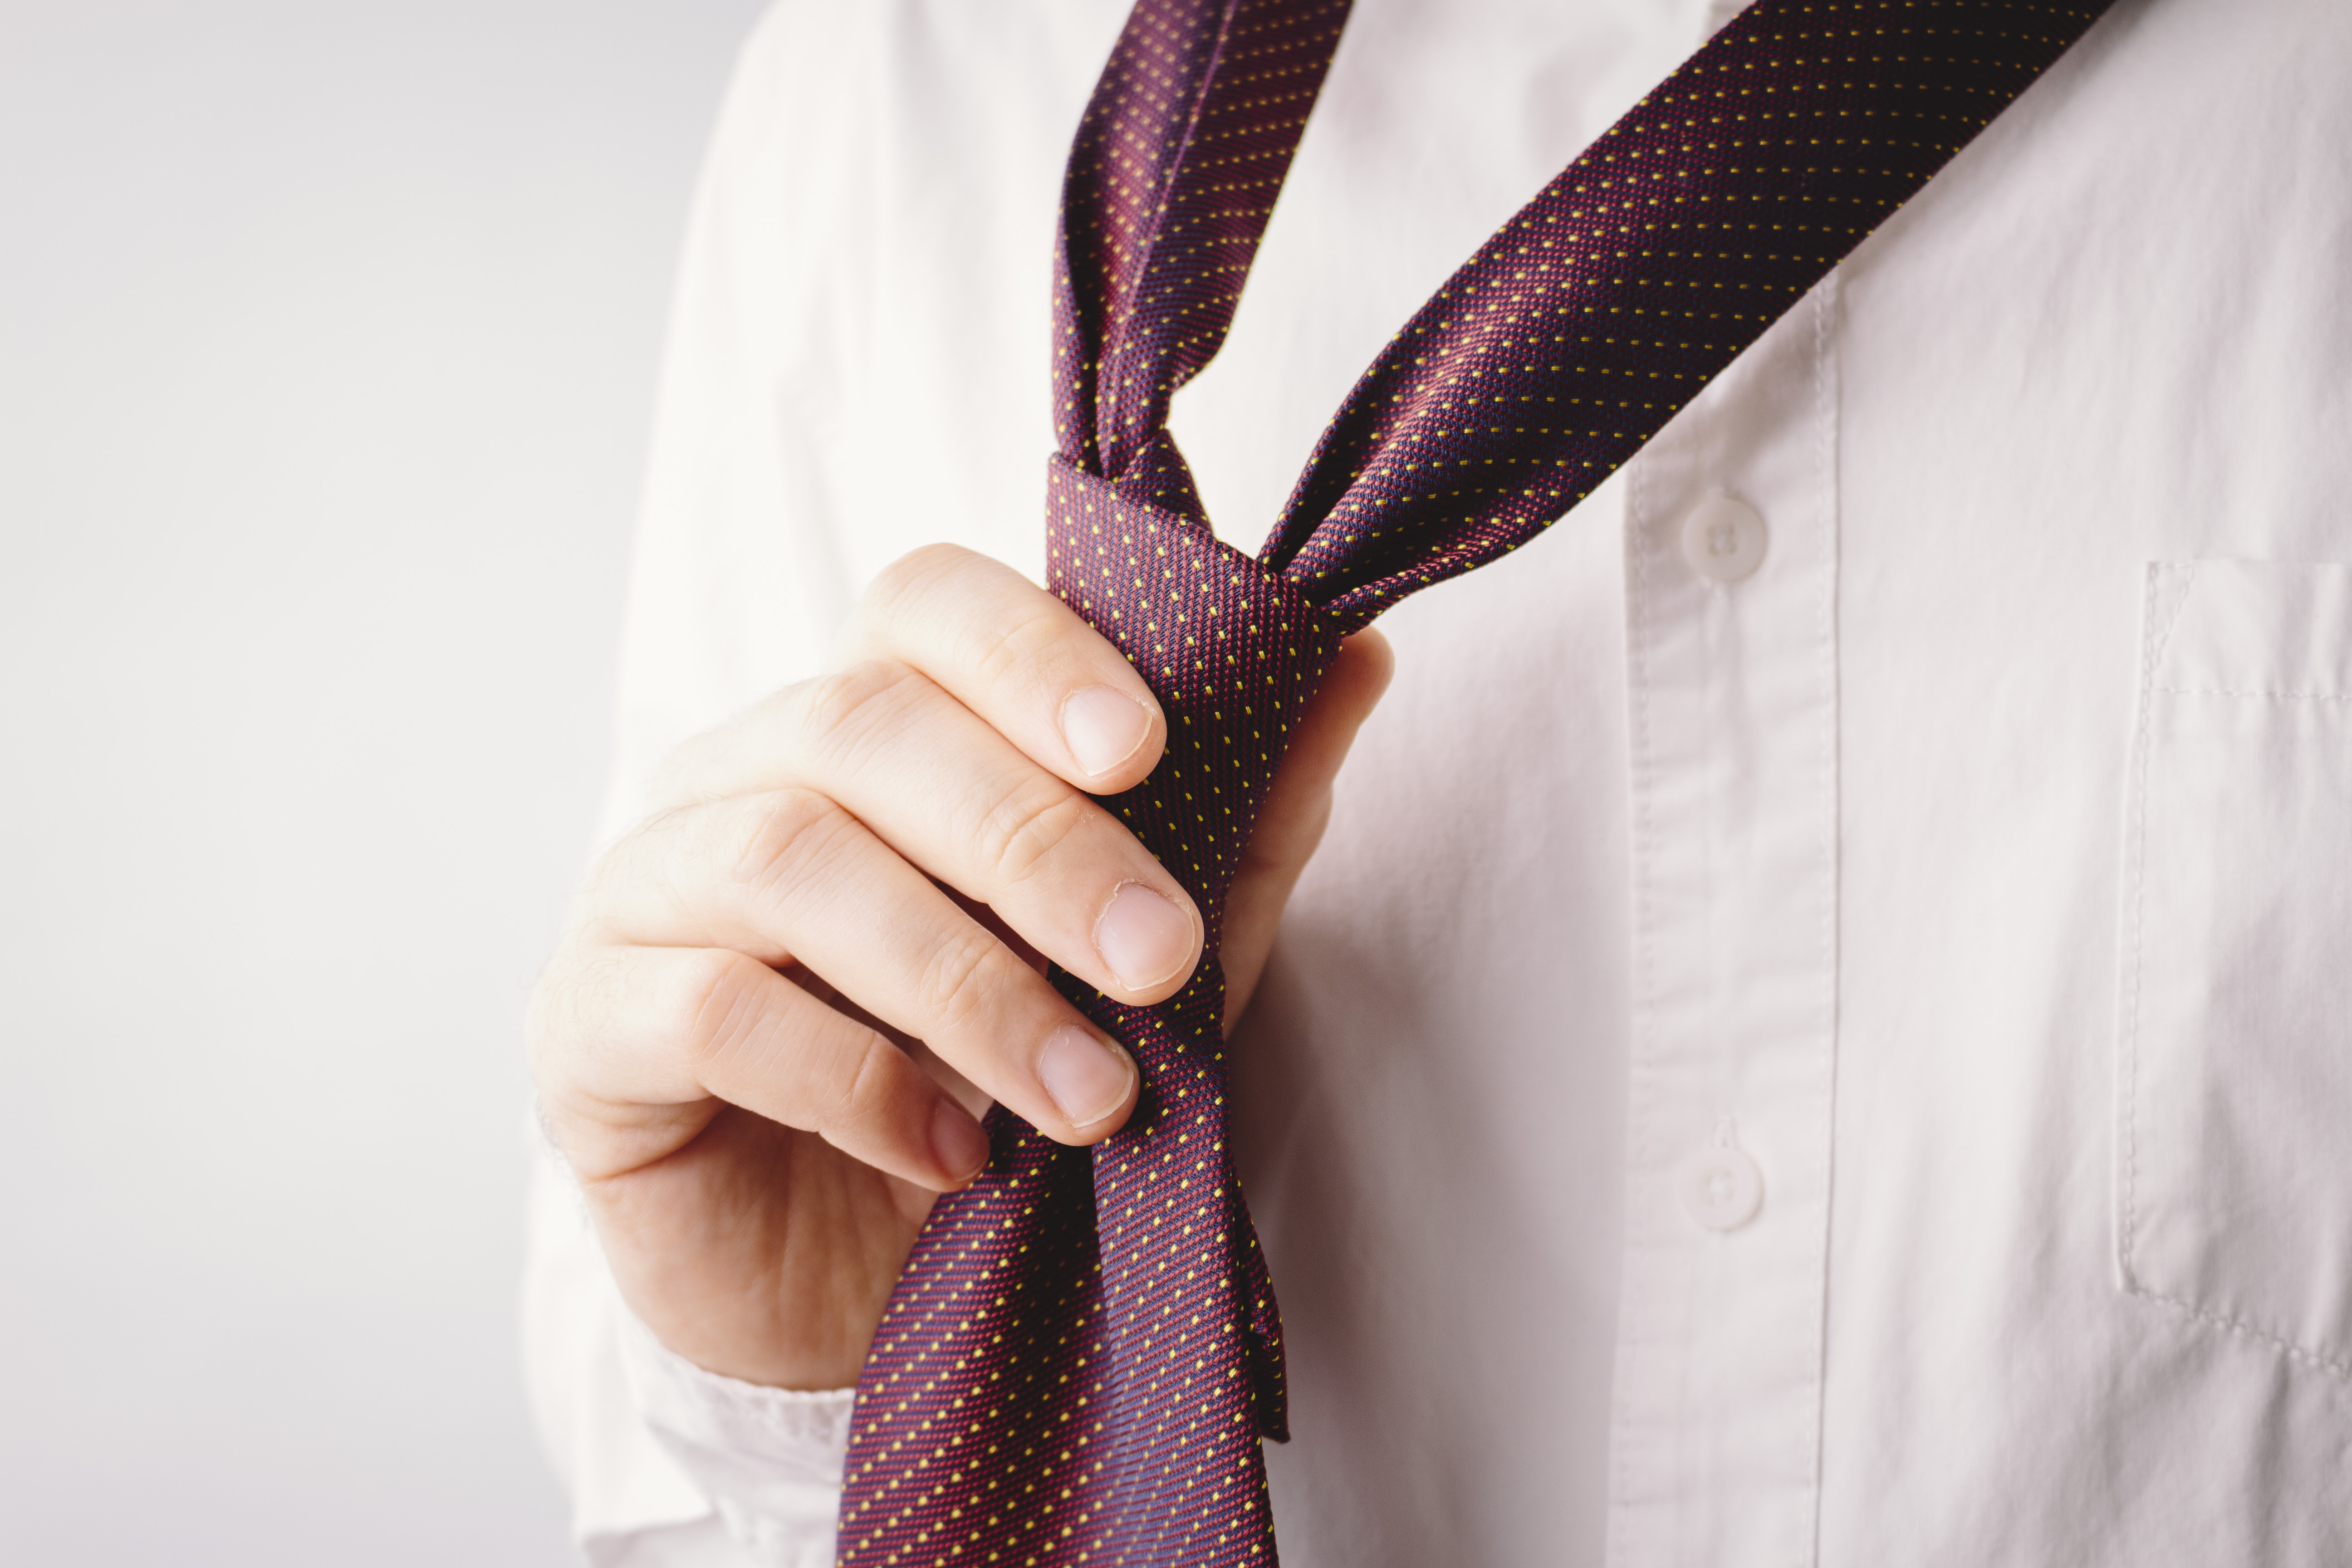 ネクタイを締める男性